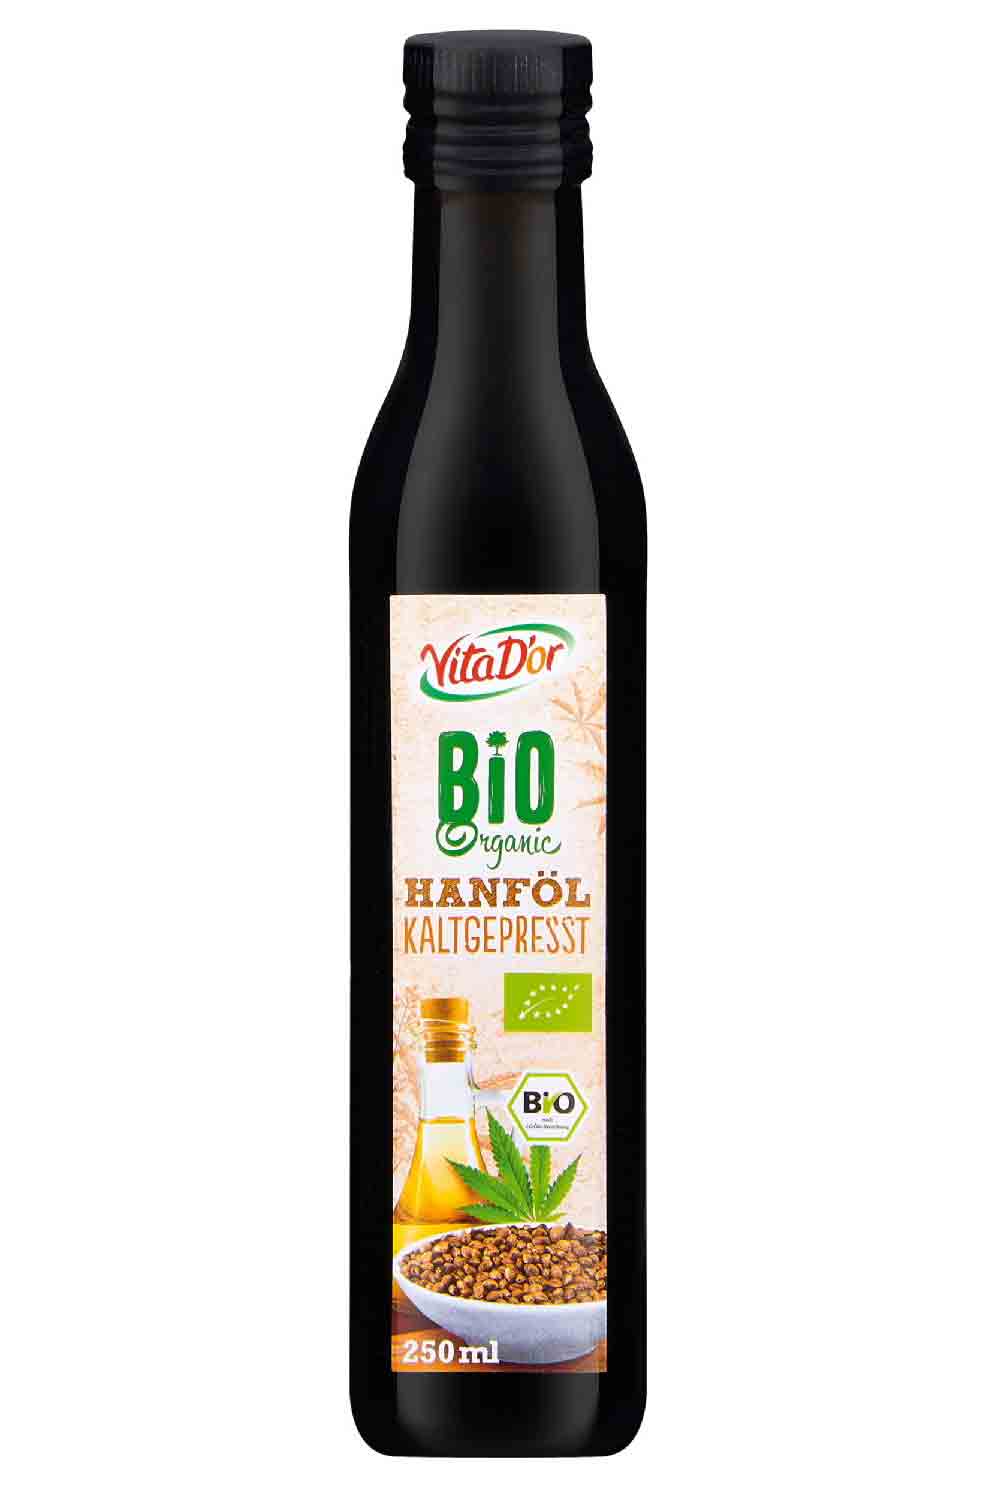 Lidl in Deutschland informiert über einen Warenrückruf des Lebensmittels »Vita Dor Bio Hanföl kaltgepresst 250 Milliliter« des Herstellers P. Brändle GmbH